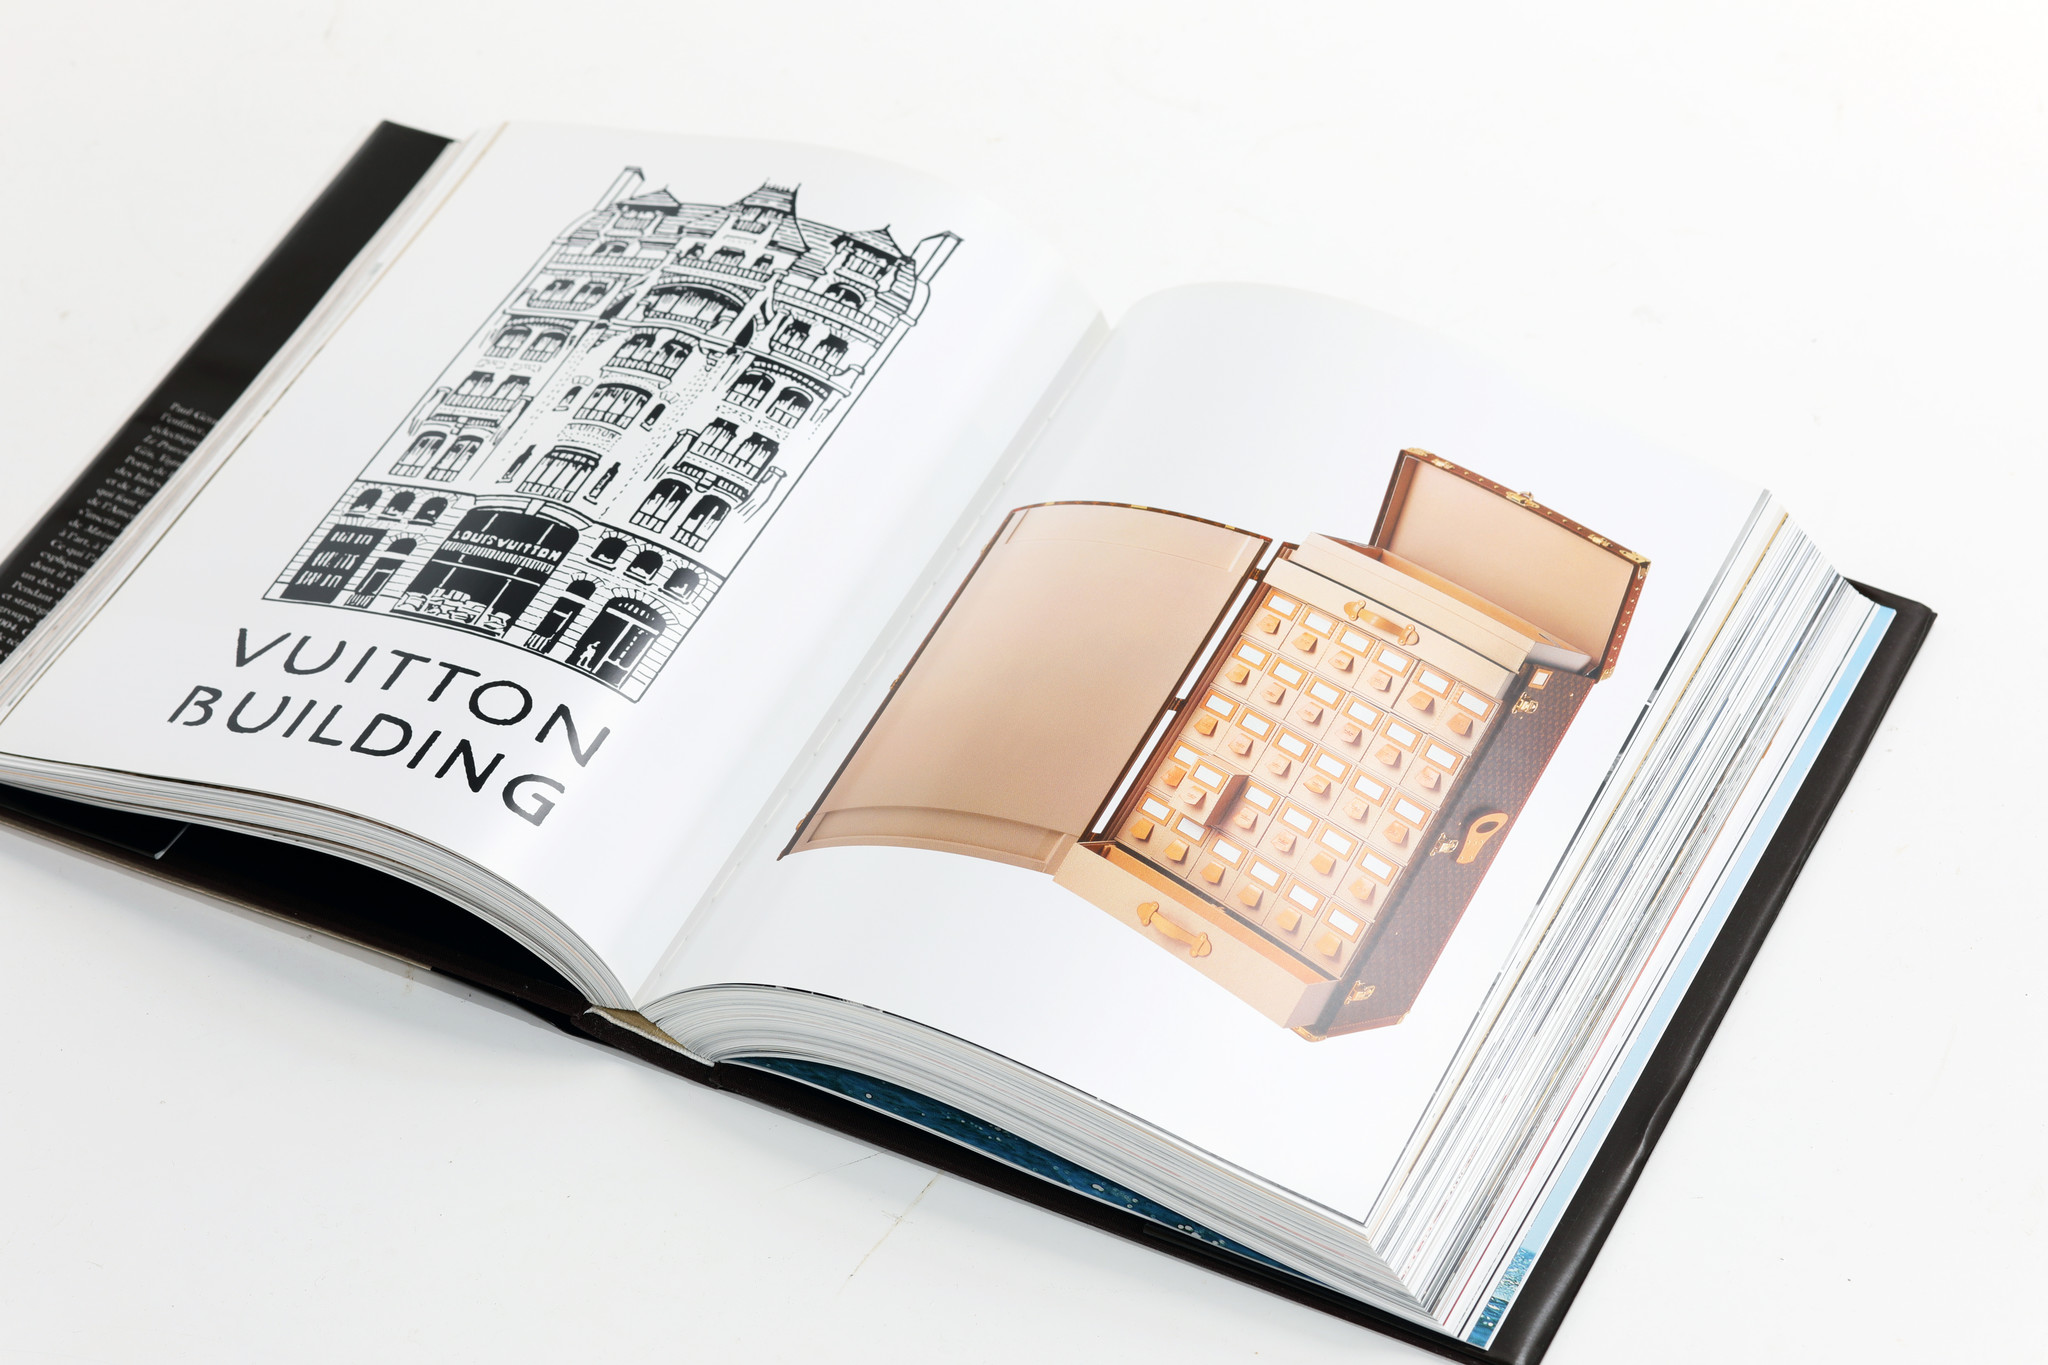 Louis Vuitton Boek The birth of modern luxury, 2004 - HET HUIS VAN WAUW